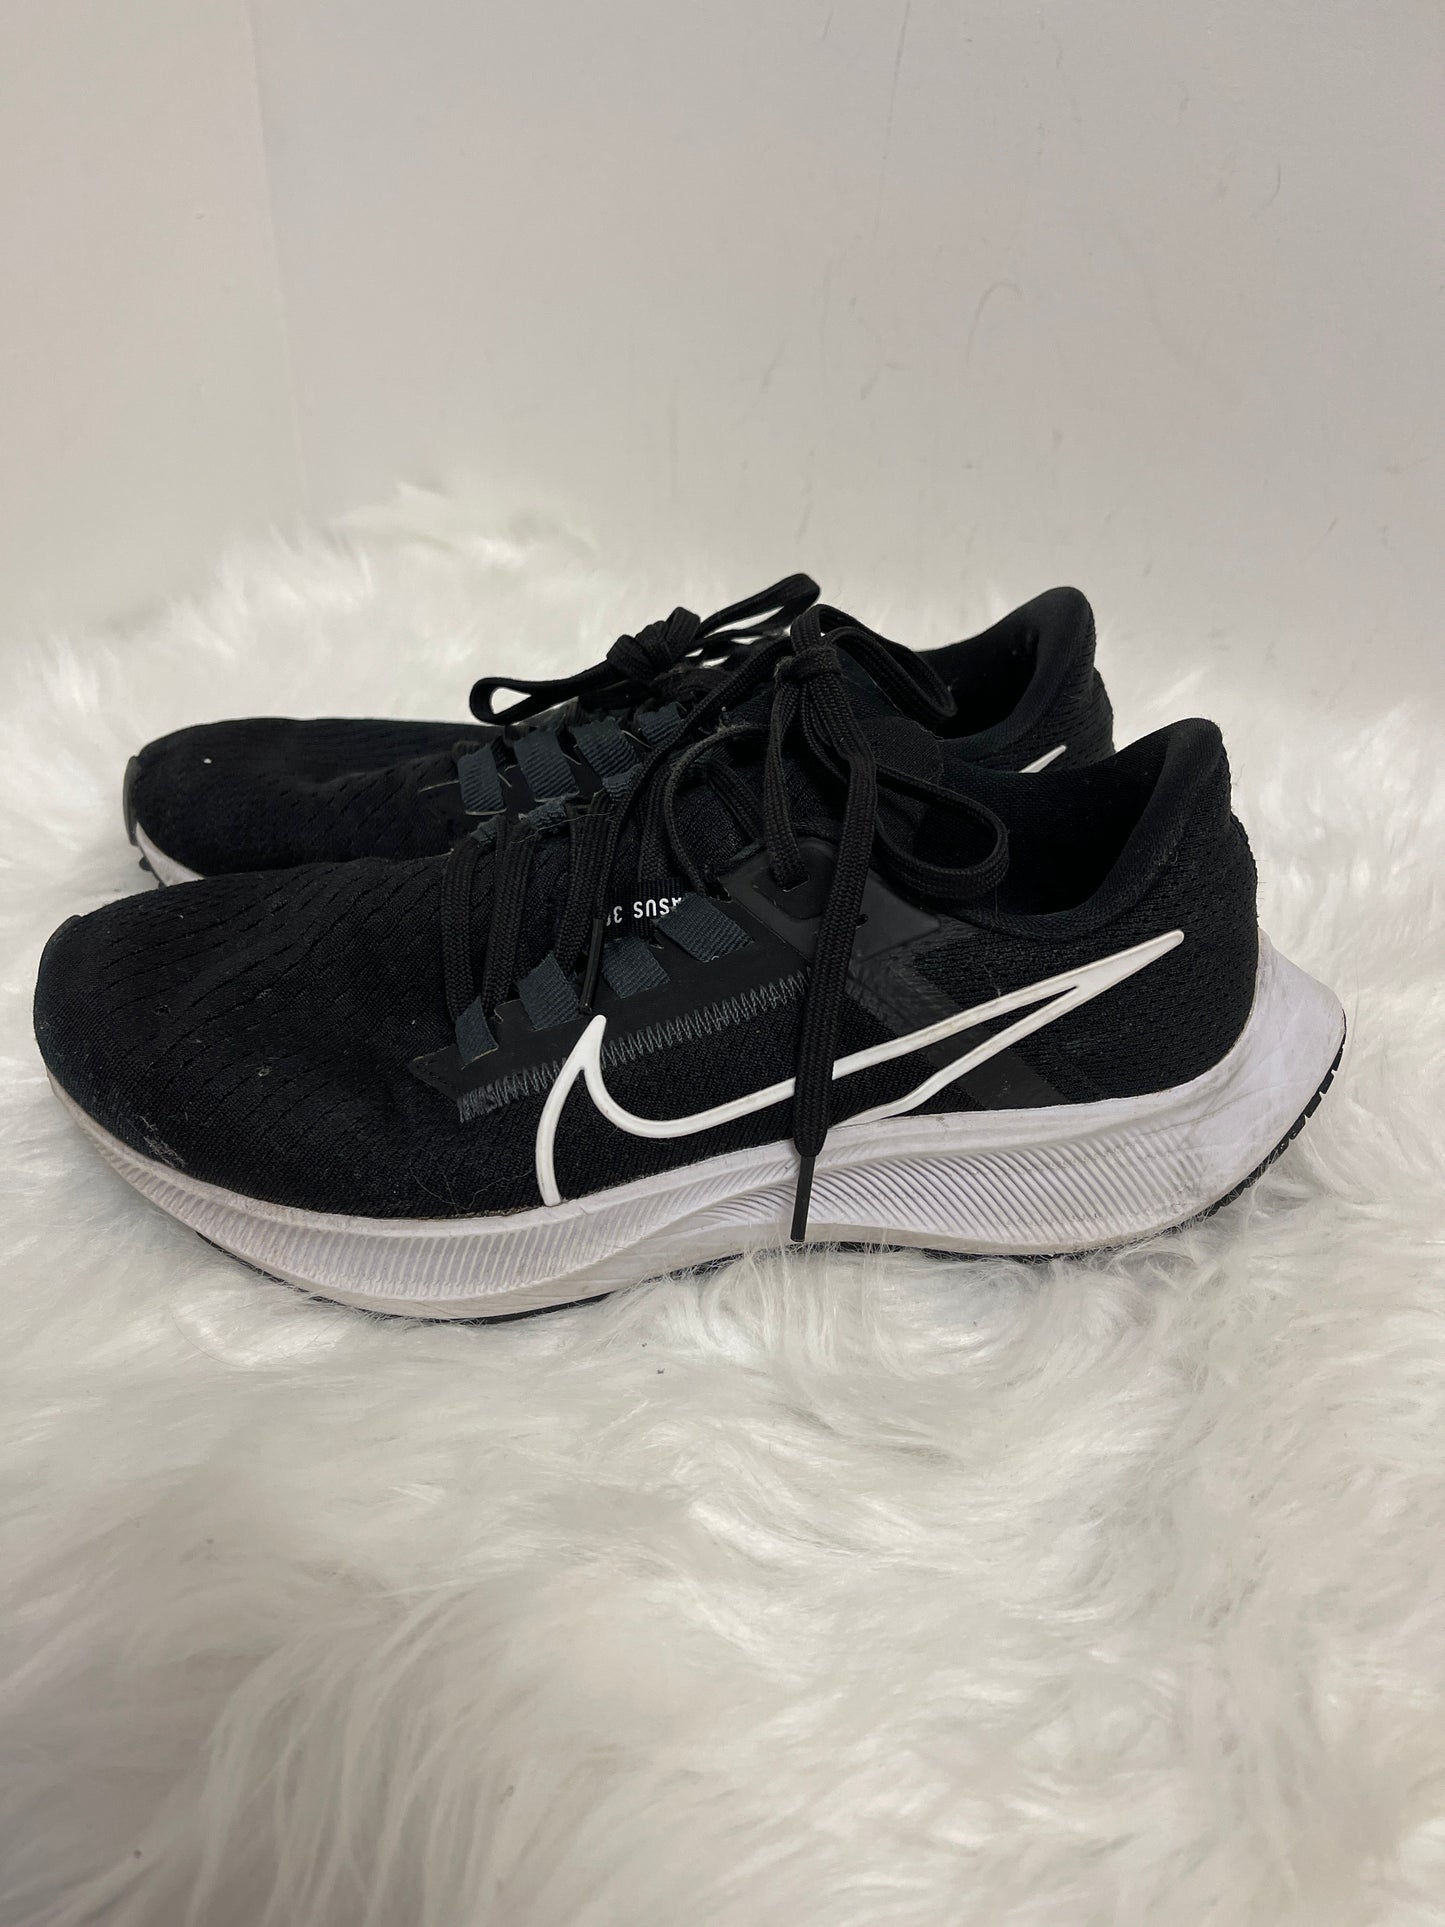 Black Shoes Athletic Nike, Size 7.5